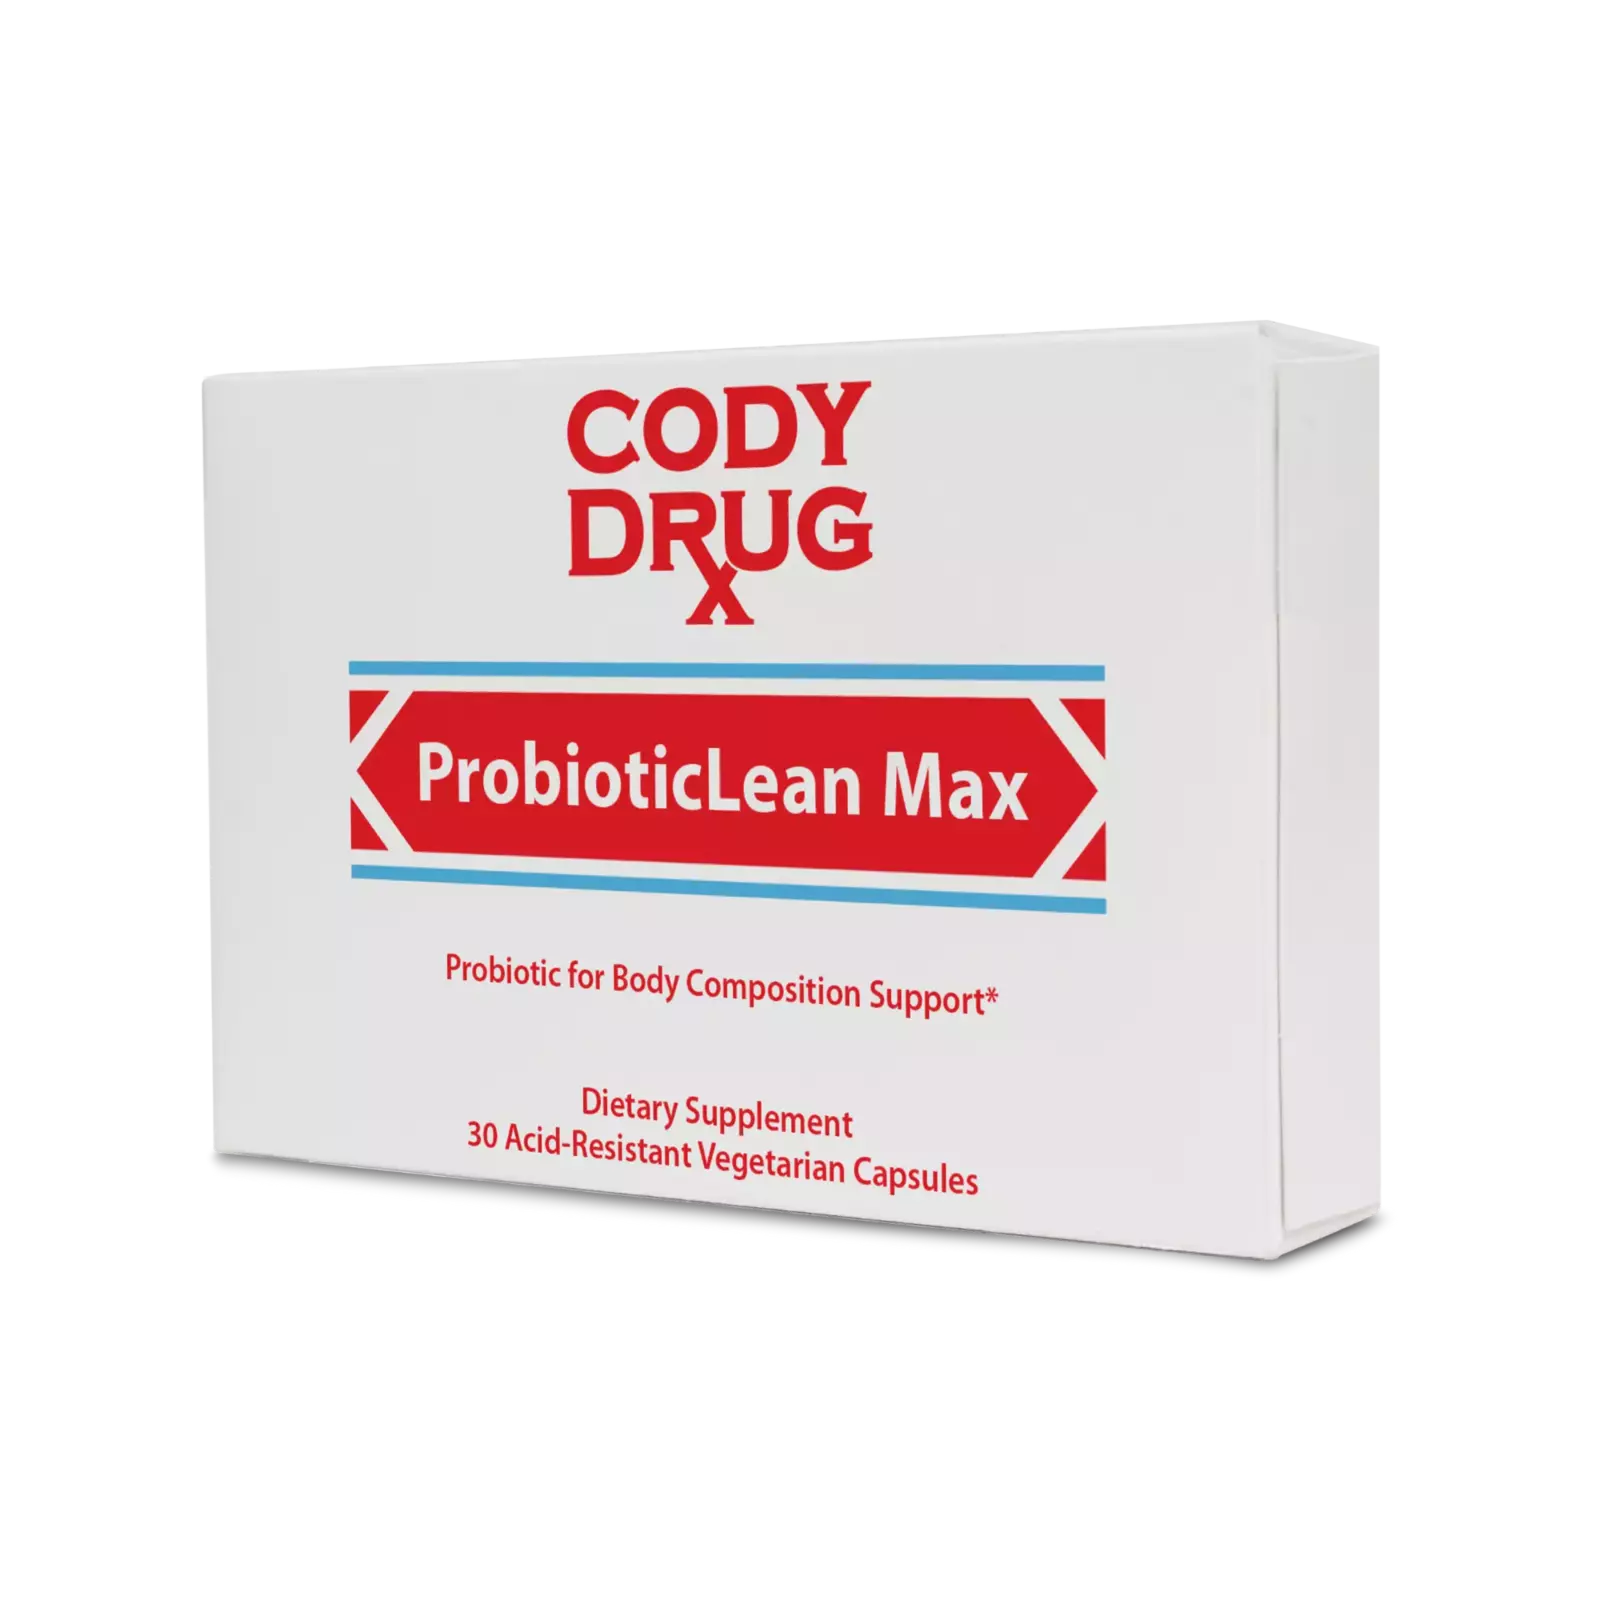 ProbioticLean Max